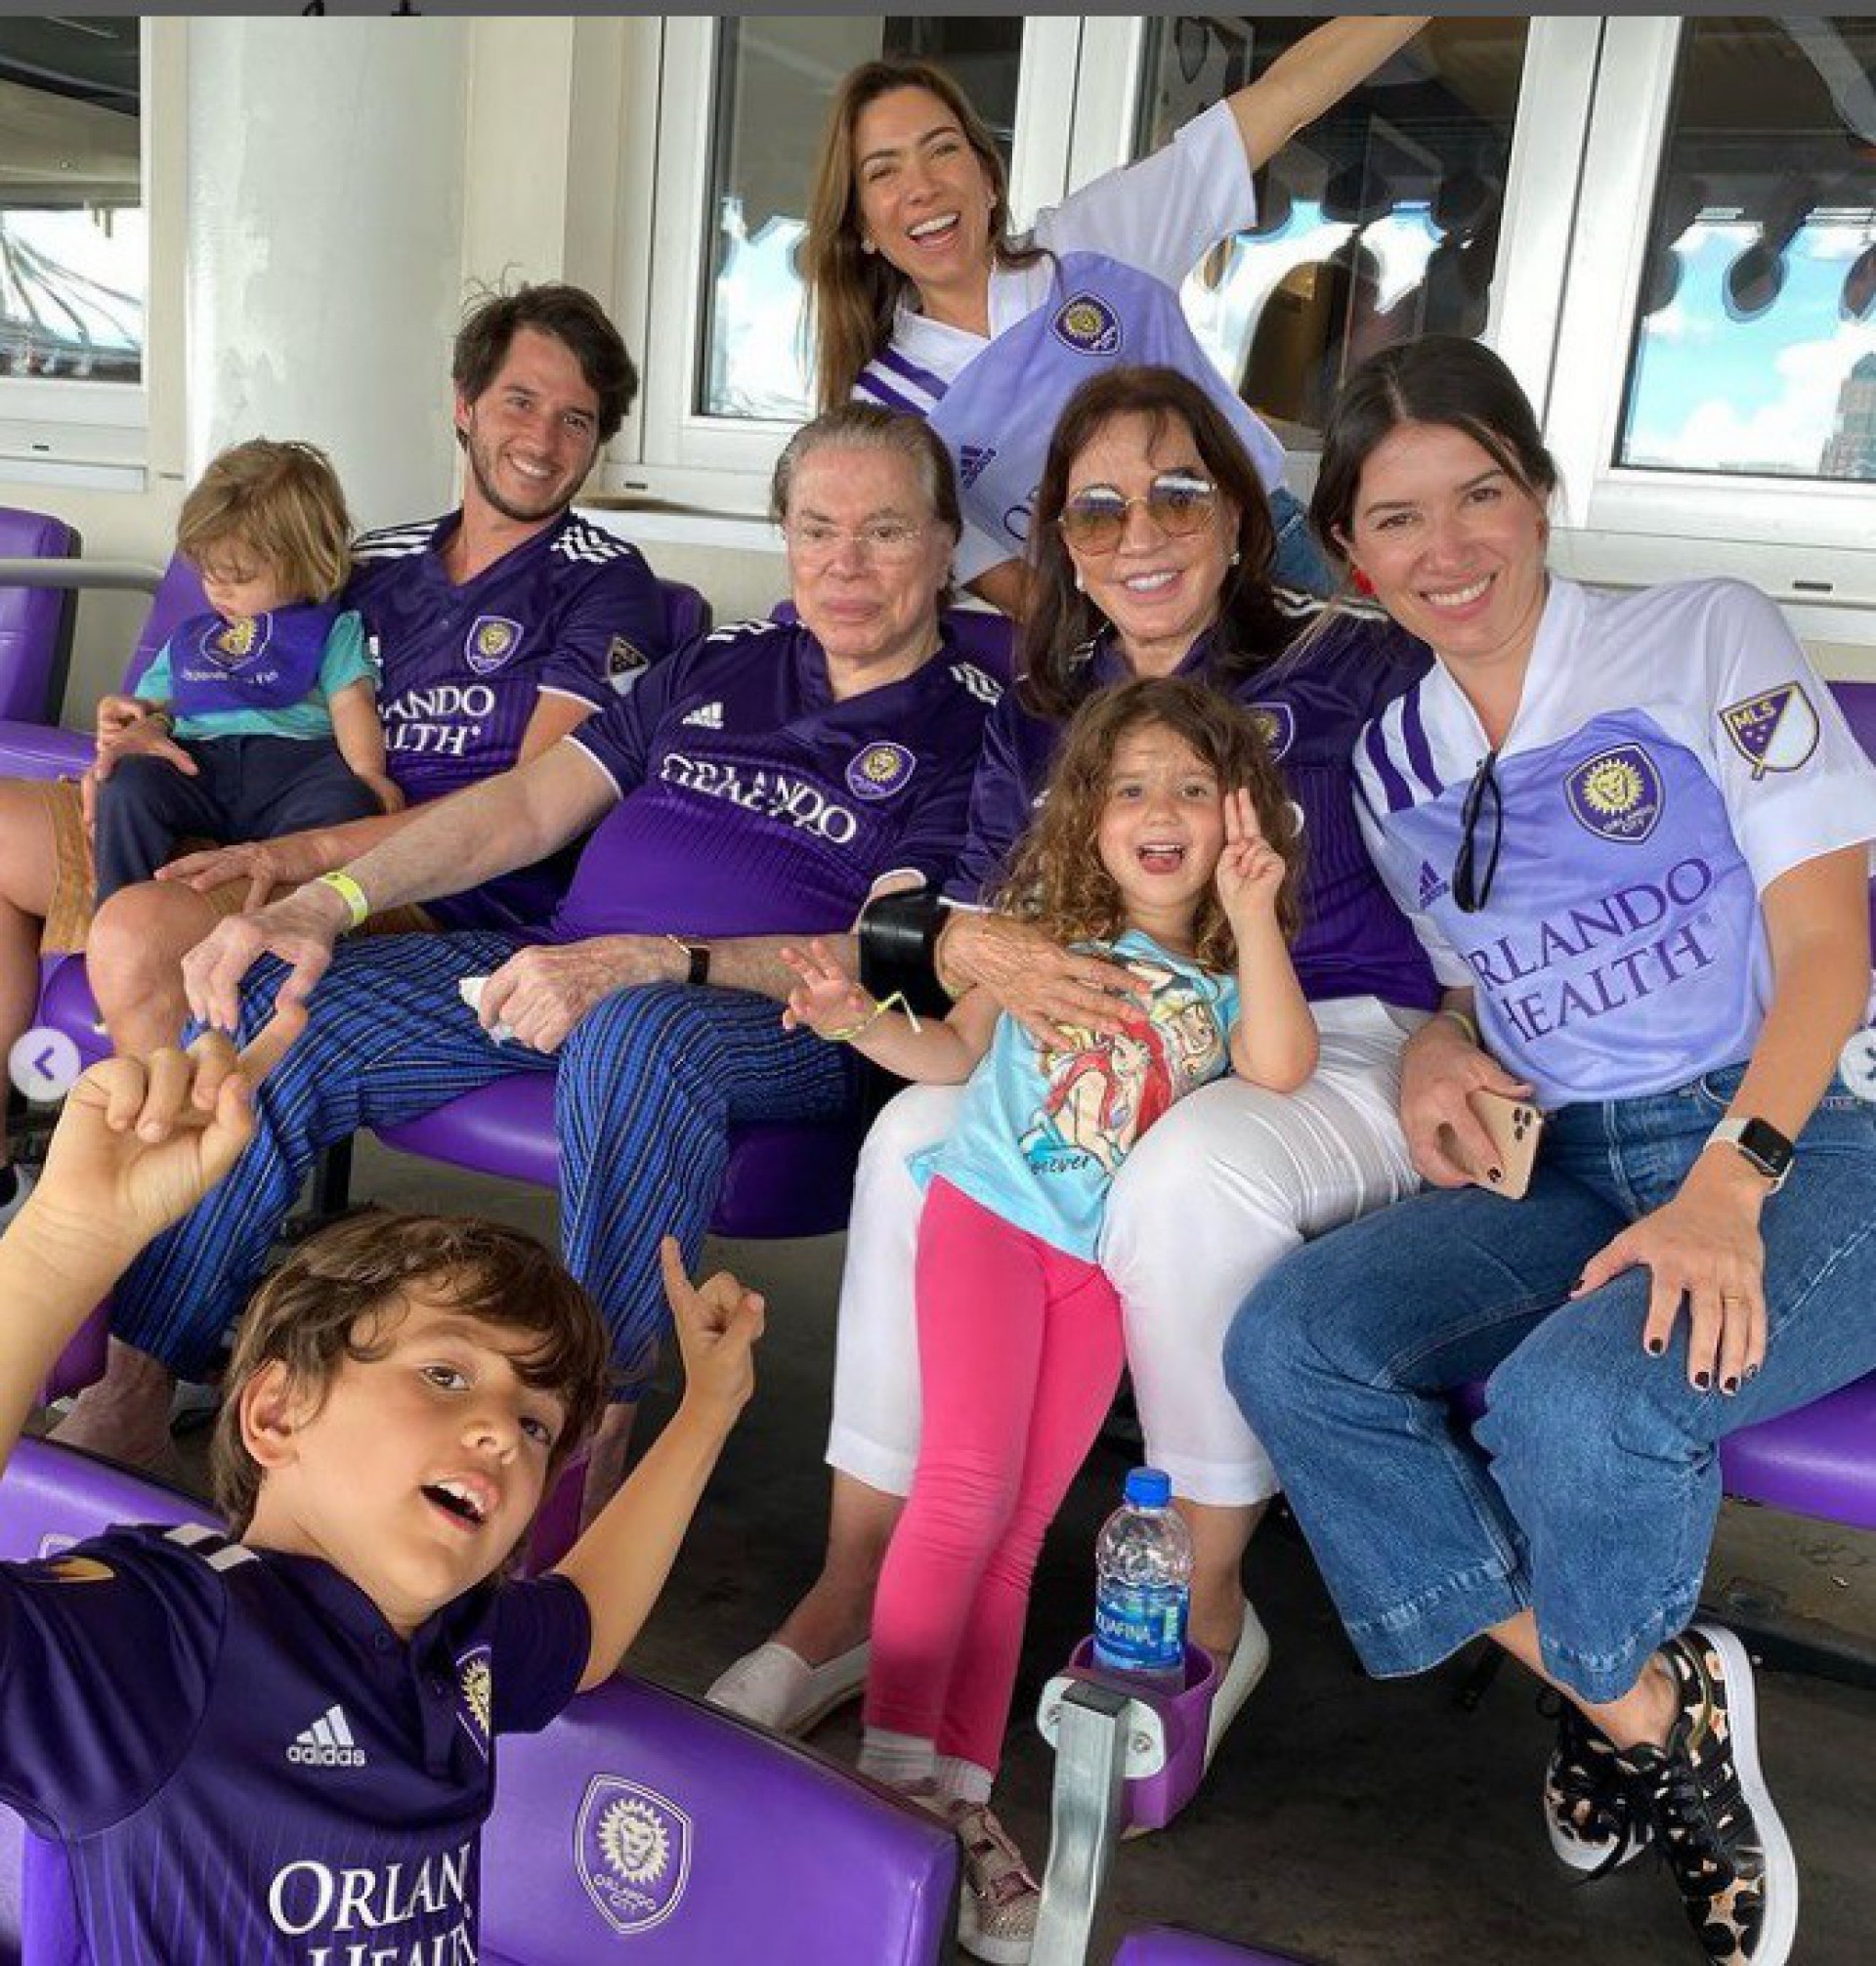 Silvio Santos assiste jogo de futebol com família em Orlando e